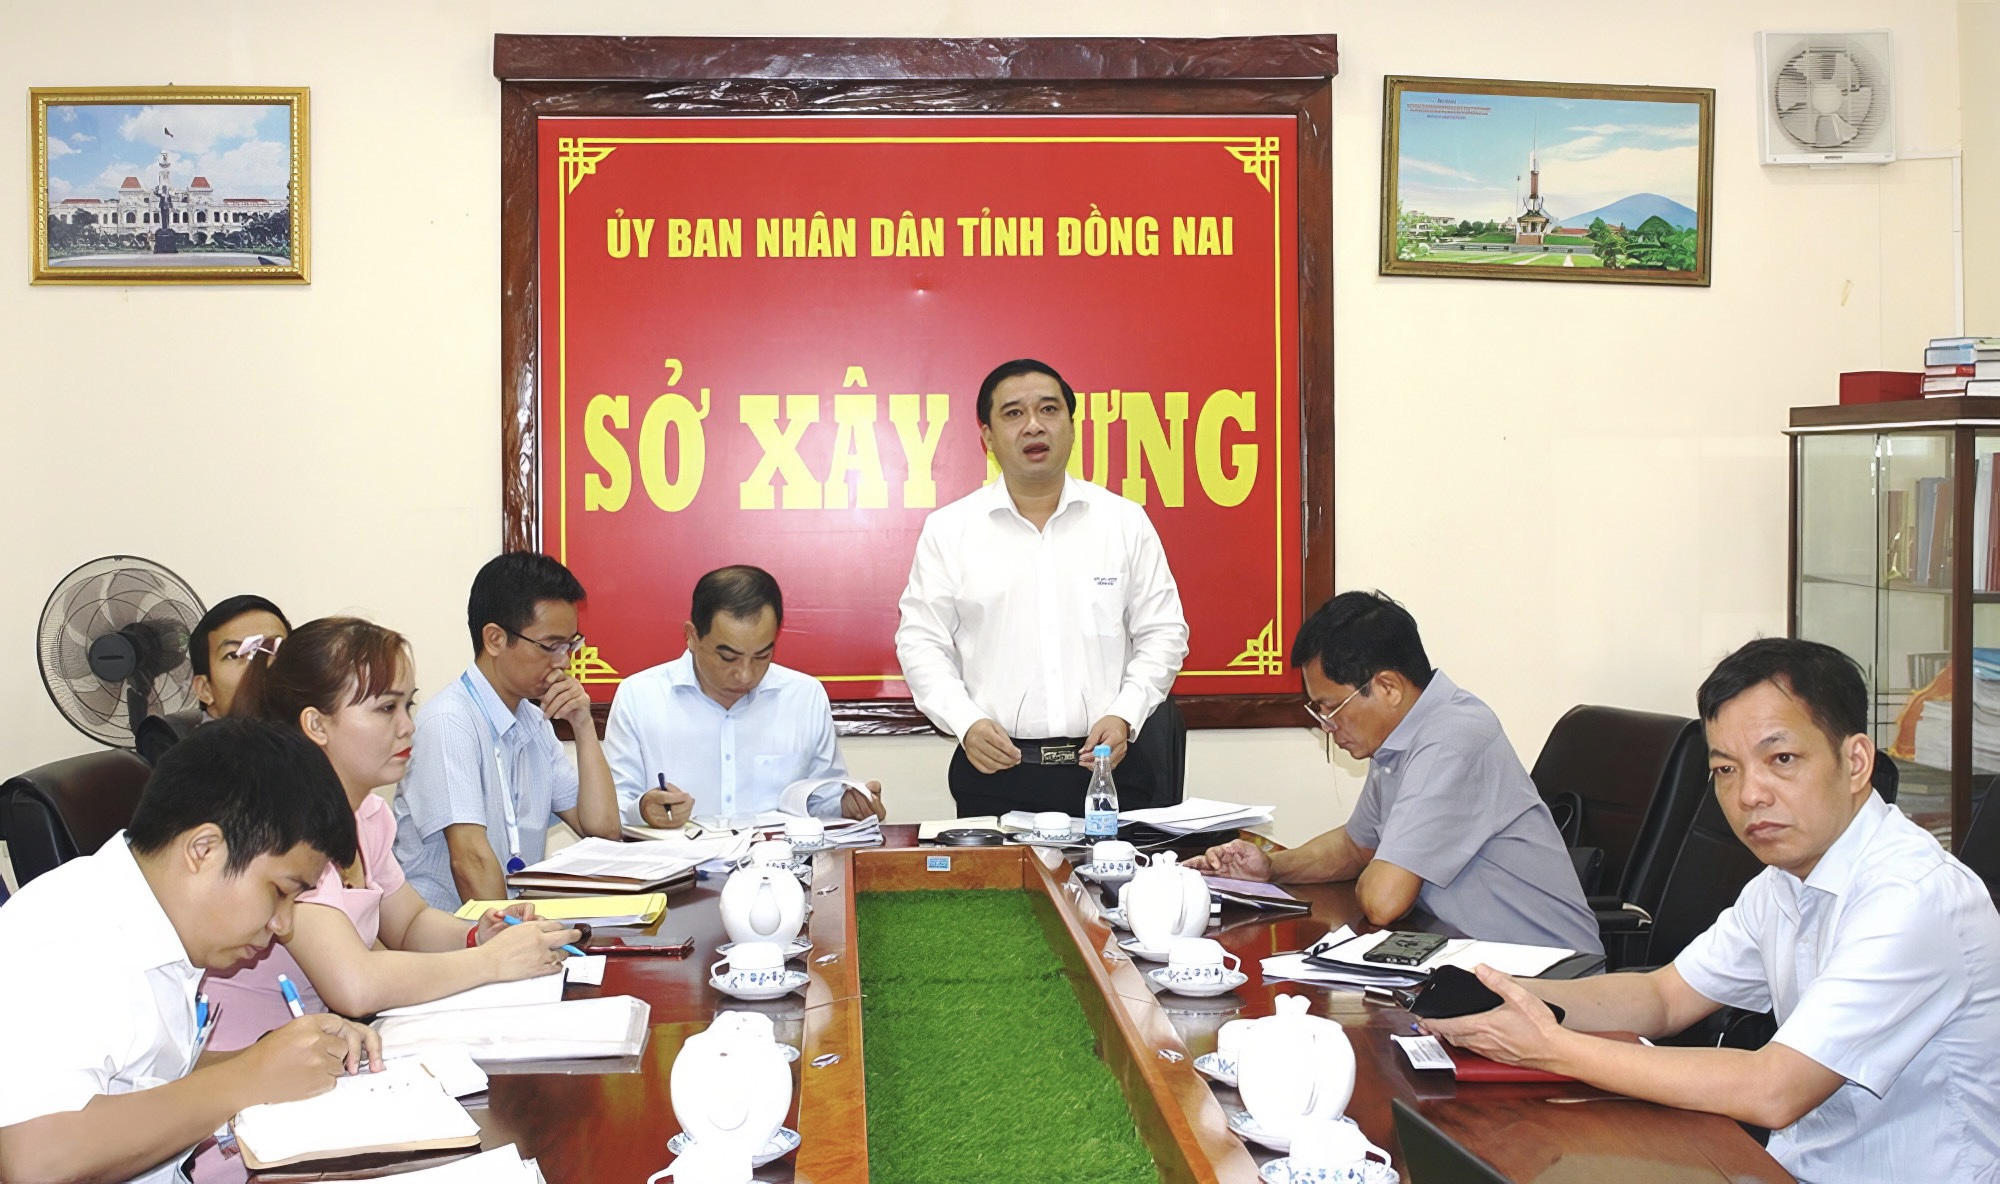 Ông Hồ Văn Hà, Giám đốc Sở Xây dựng chủ trì cuộc họp (ảnh Báo Đồng Nai)